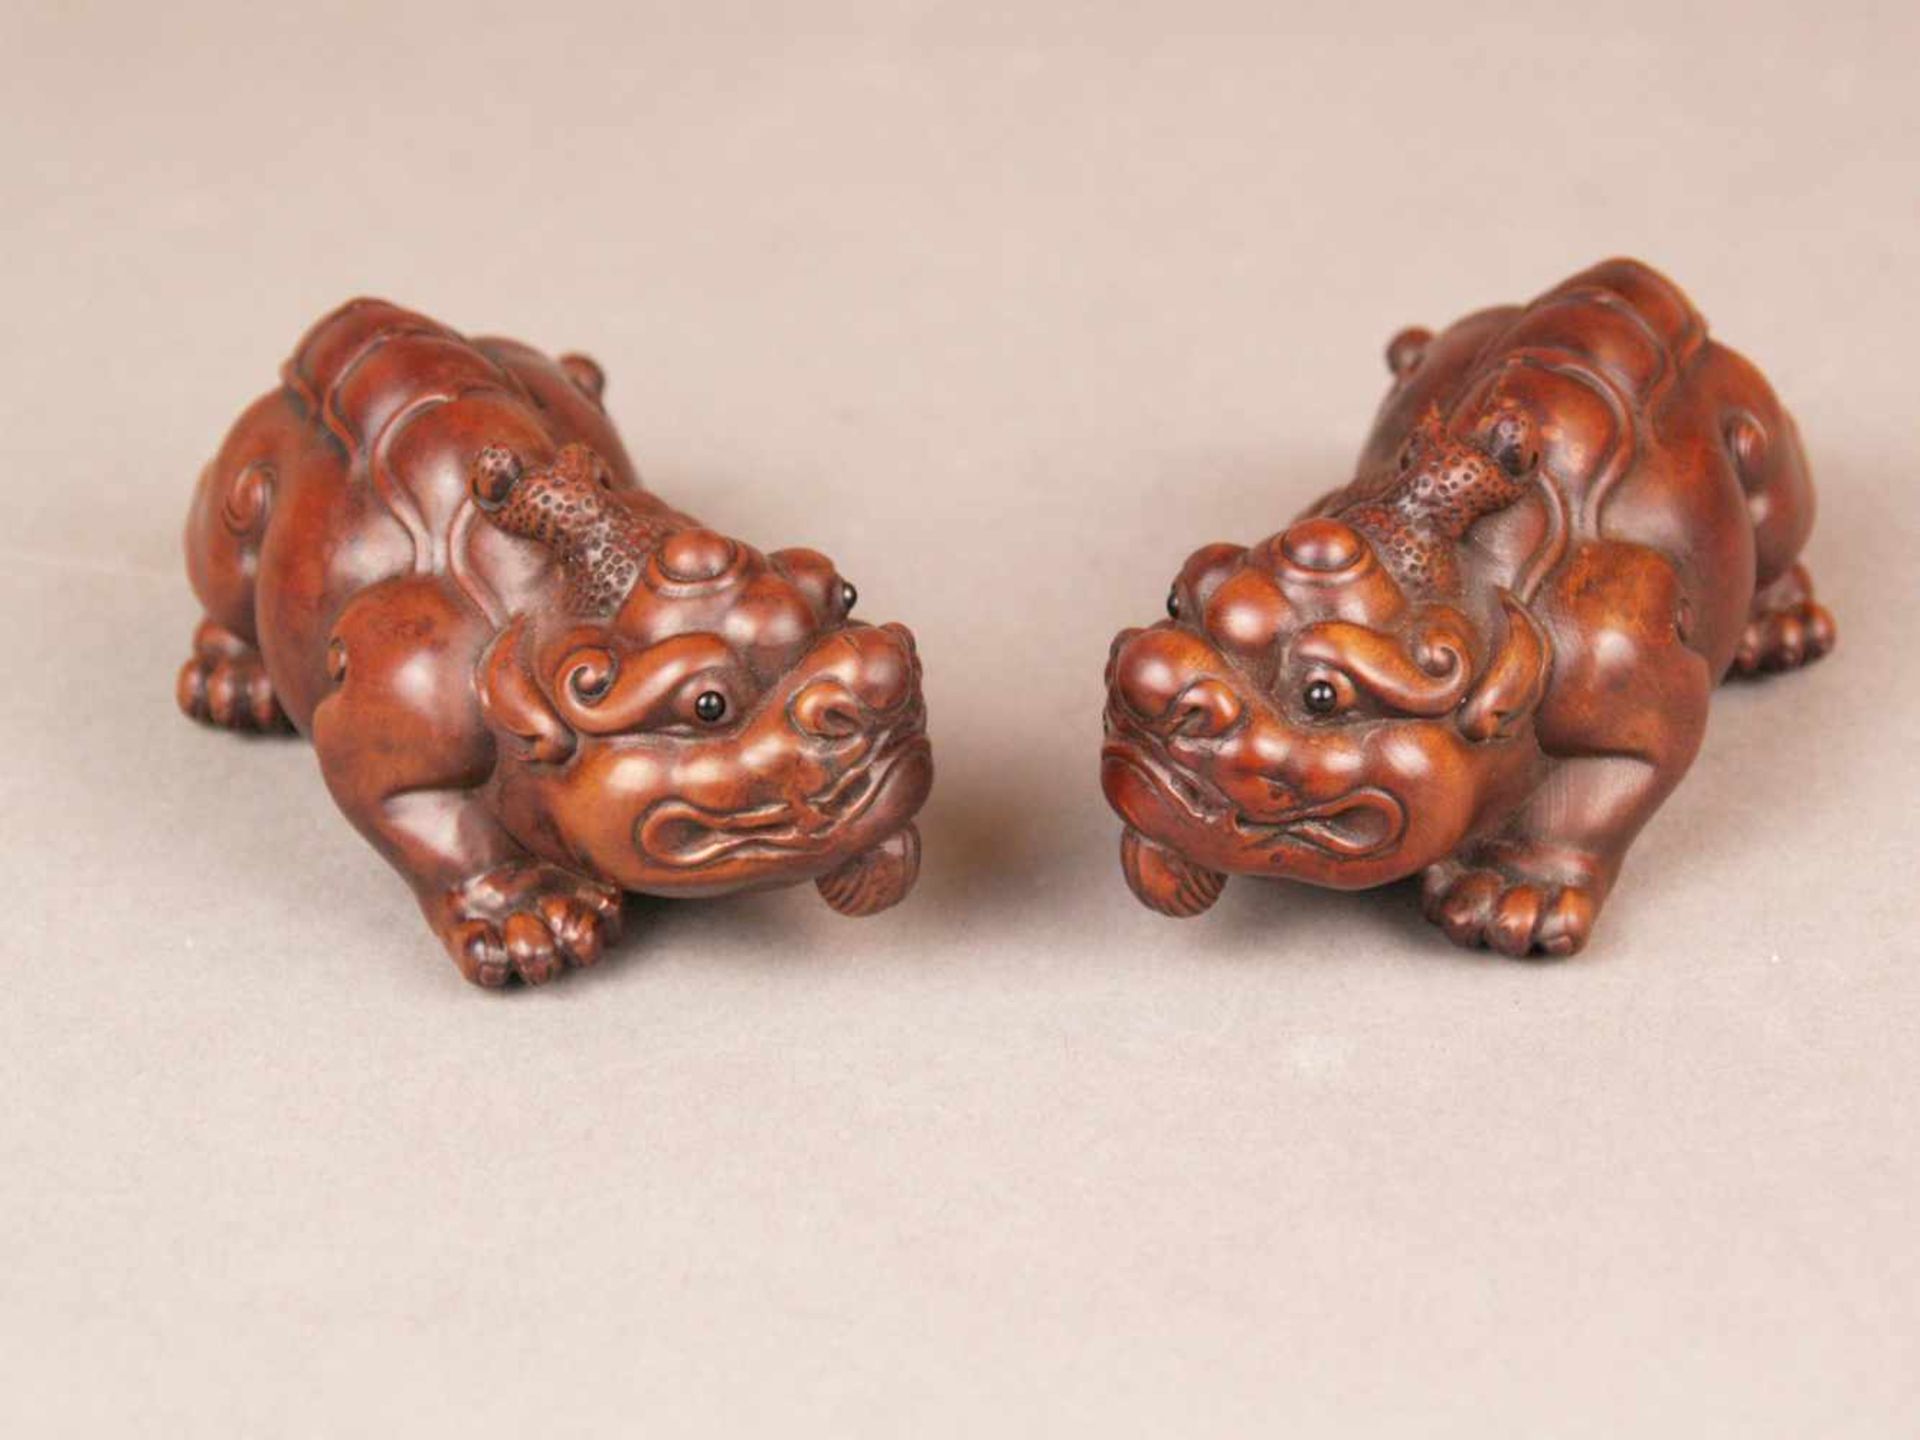 Paar Chimären/Bixie-Figuren - China, sehr feine Holzschnitzereien,Gegenstücke zweier kompakter